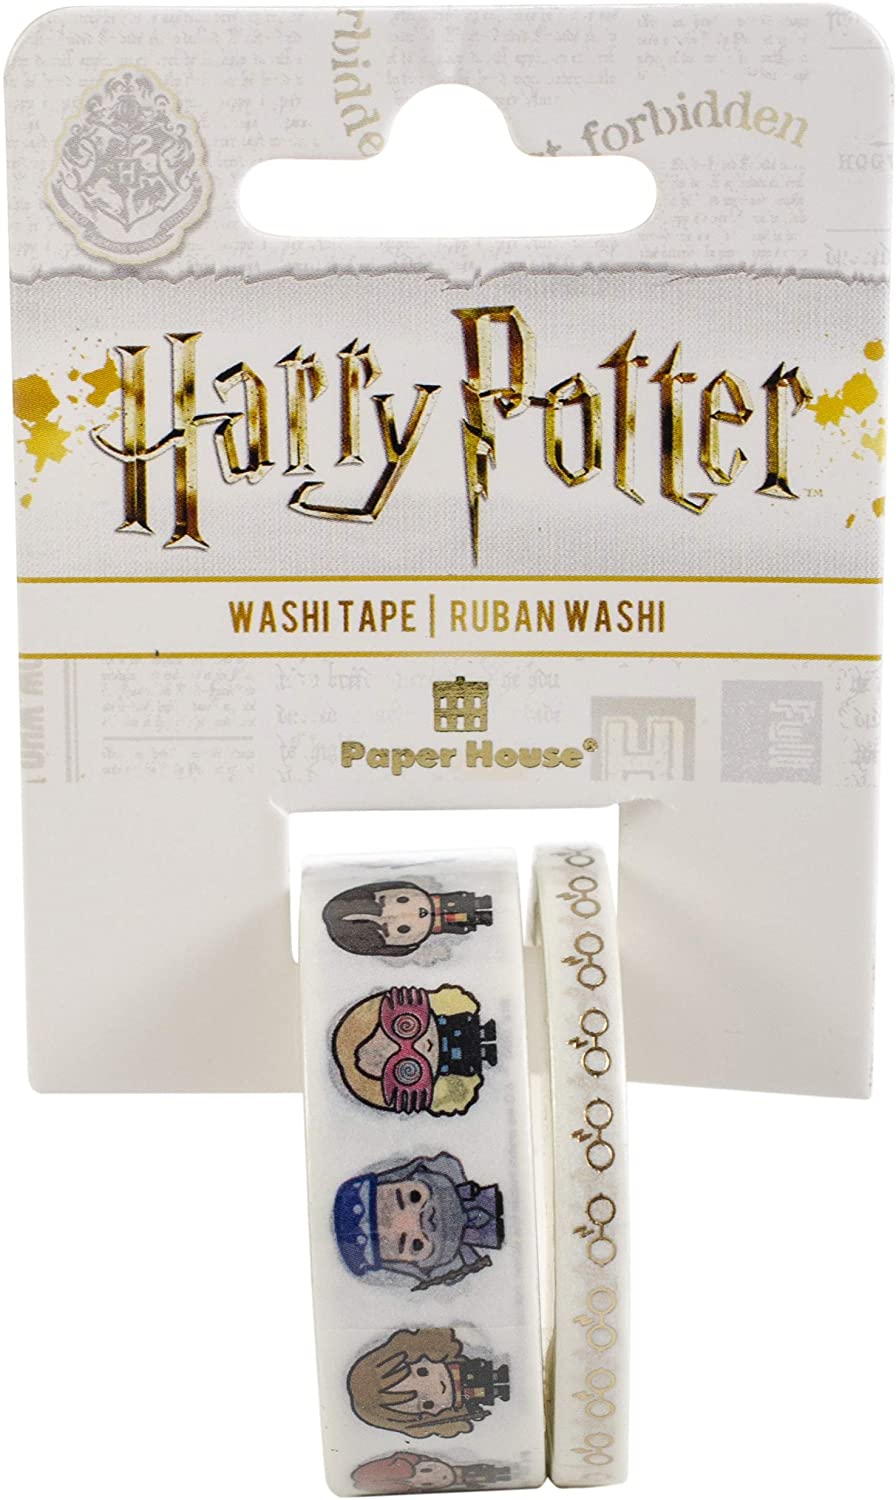 Harry Potter Chibi Washi Tape